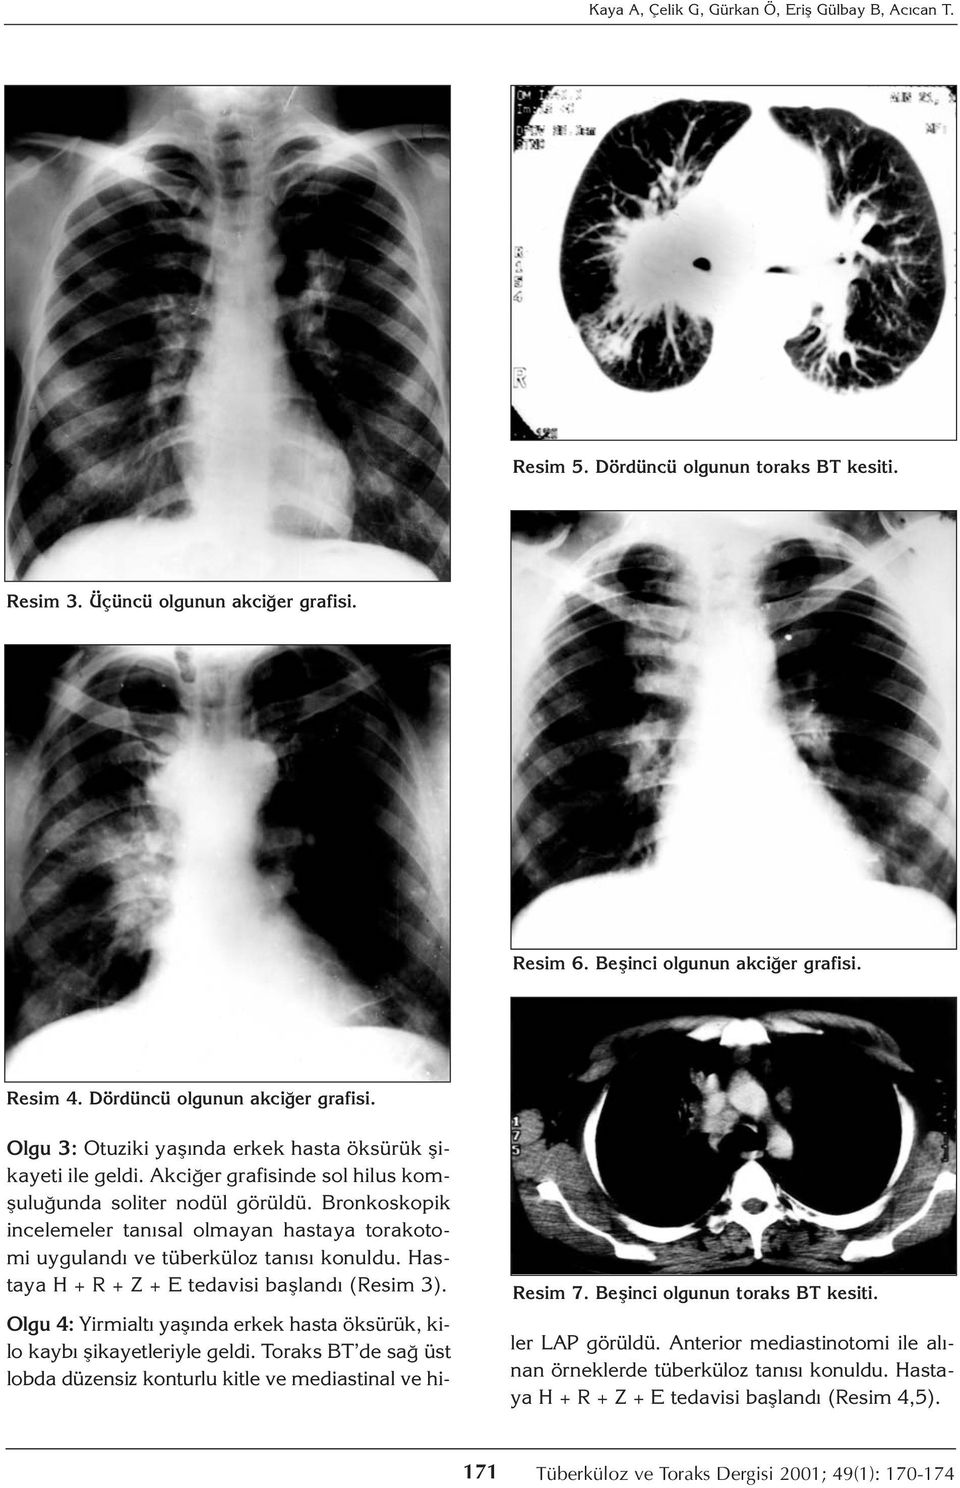 Bronkoskopik incelemeler tanısal olmayan hastaya torakotomi uygulandı ve tüberküloz tanısı konuldu. Hastaya H + R + Z + E tedavisi başlandı (Resim 3). Resim 7. Beşinci olgunun toraks BT kesiti.